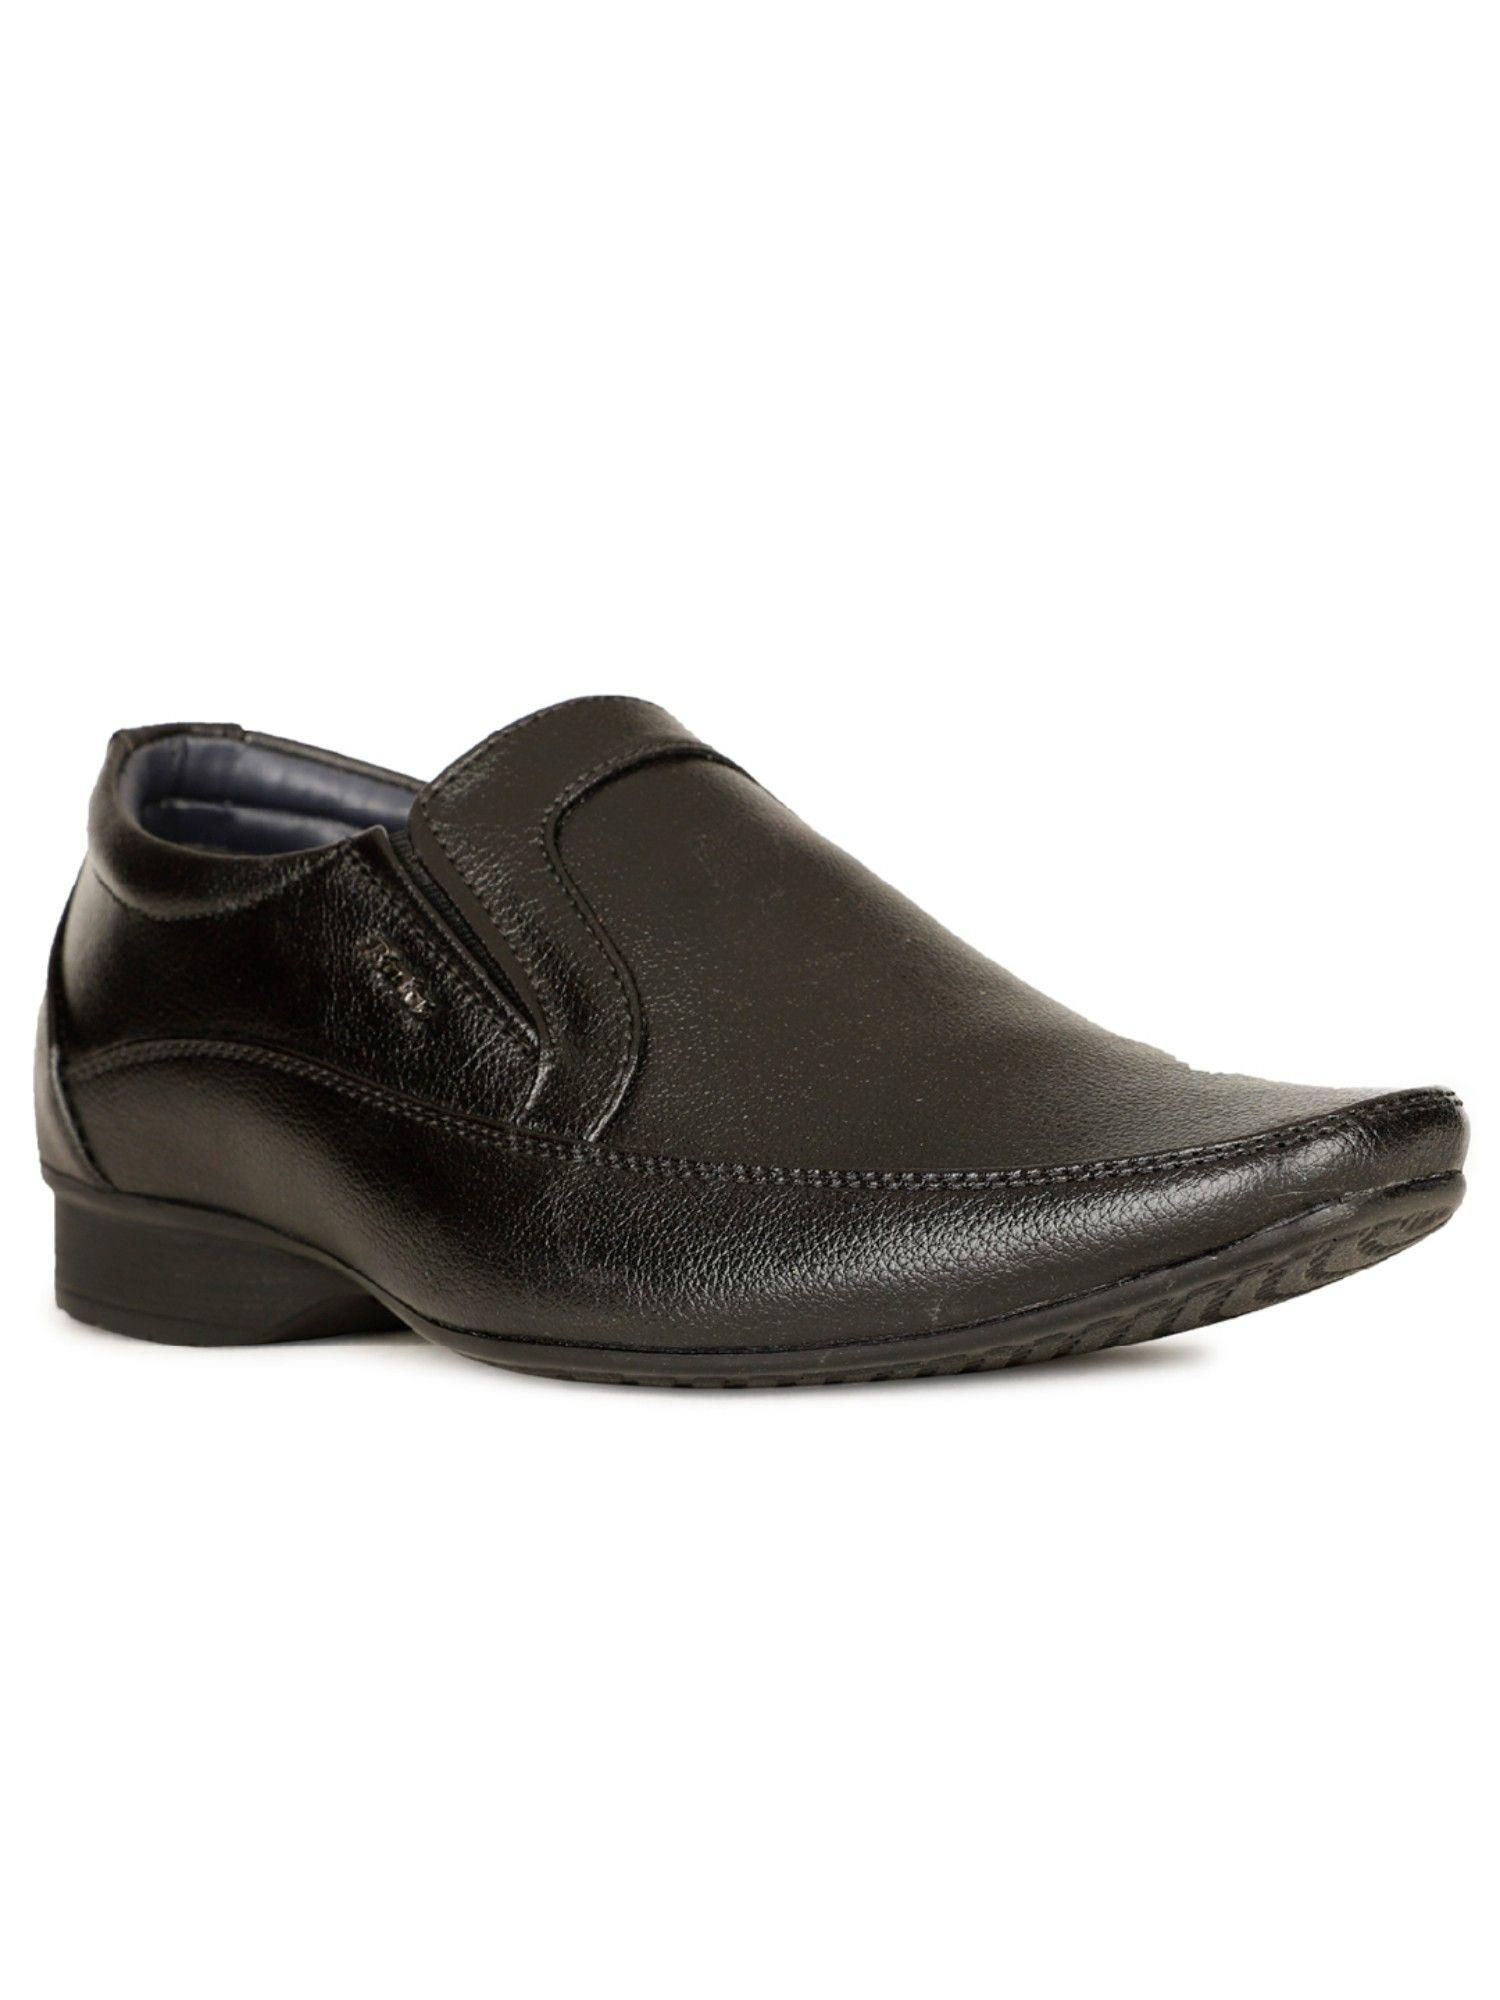 men-slip-on-formal-shoes